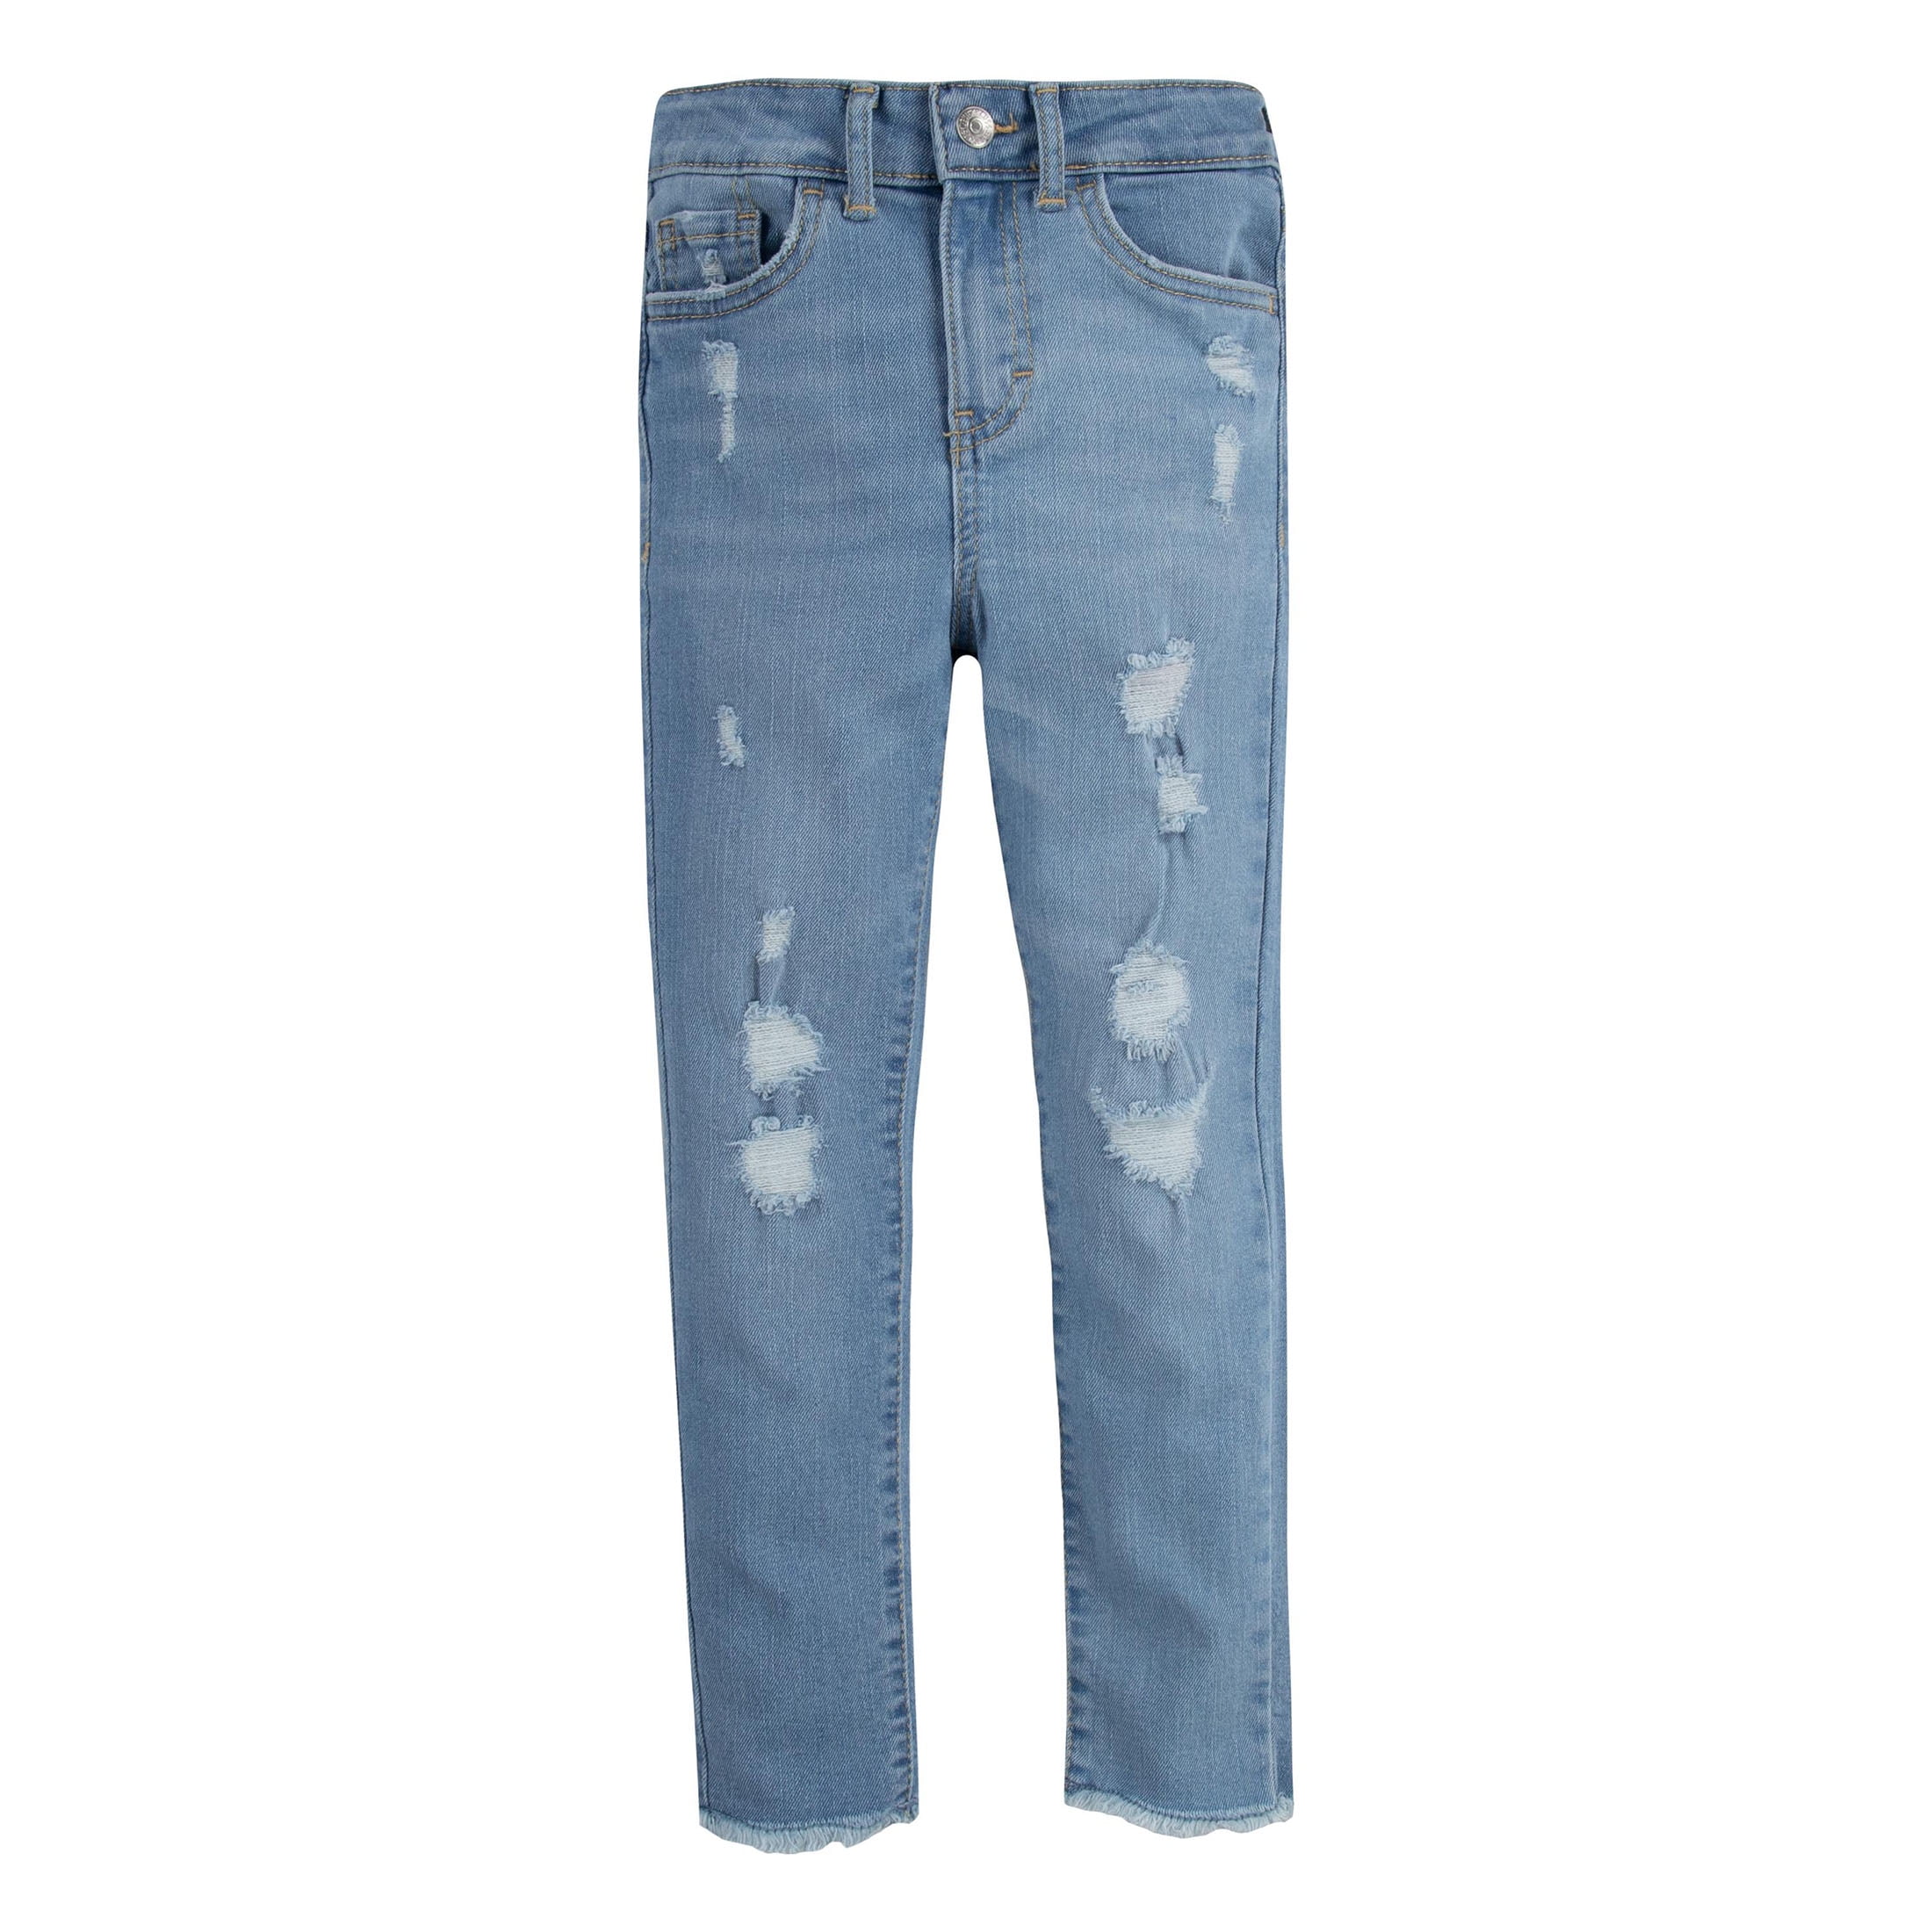 Kids Boys Girls Zip Pockets Fashion Pants Denim Trousers Blue Jeans Size 4-9 Yrs 